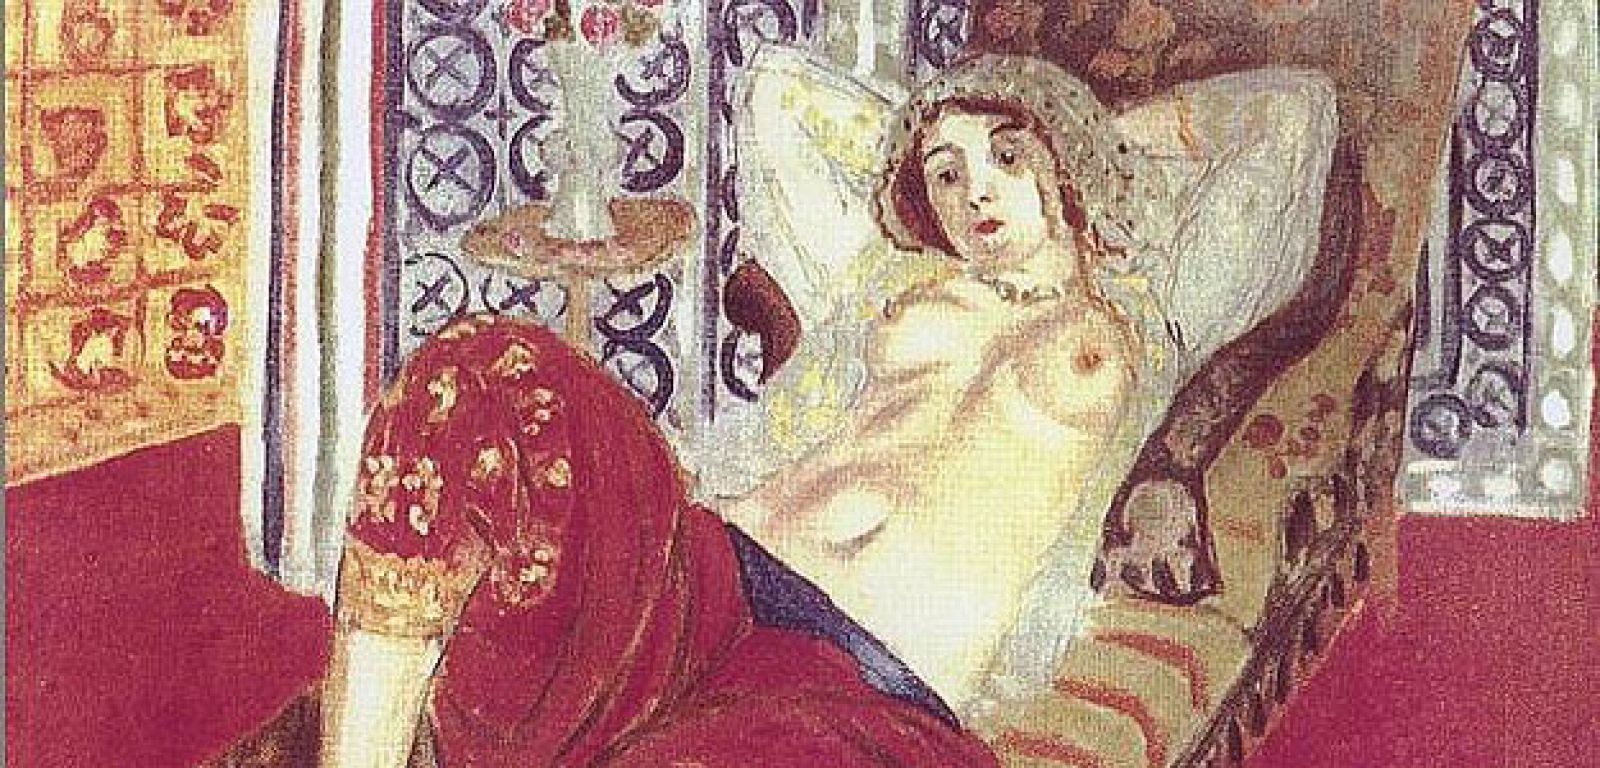 La "Odalisca con pantalón rojo", de Matisse